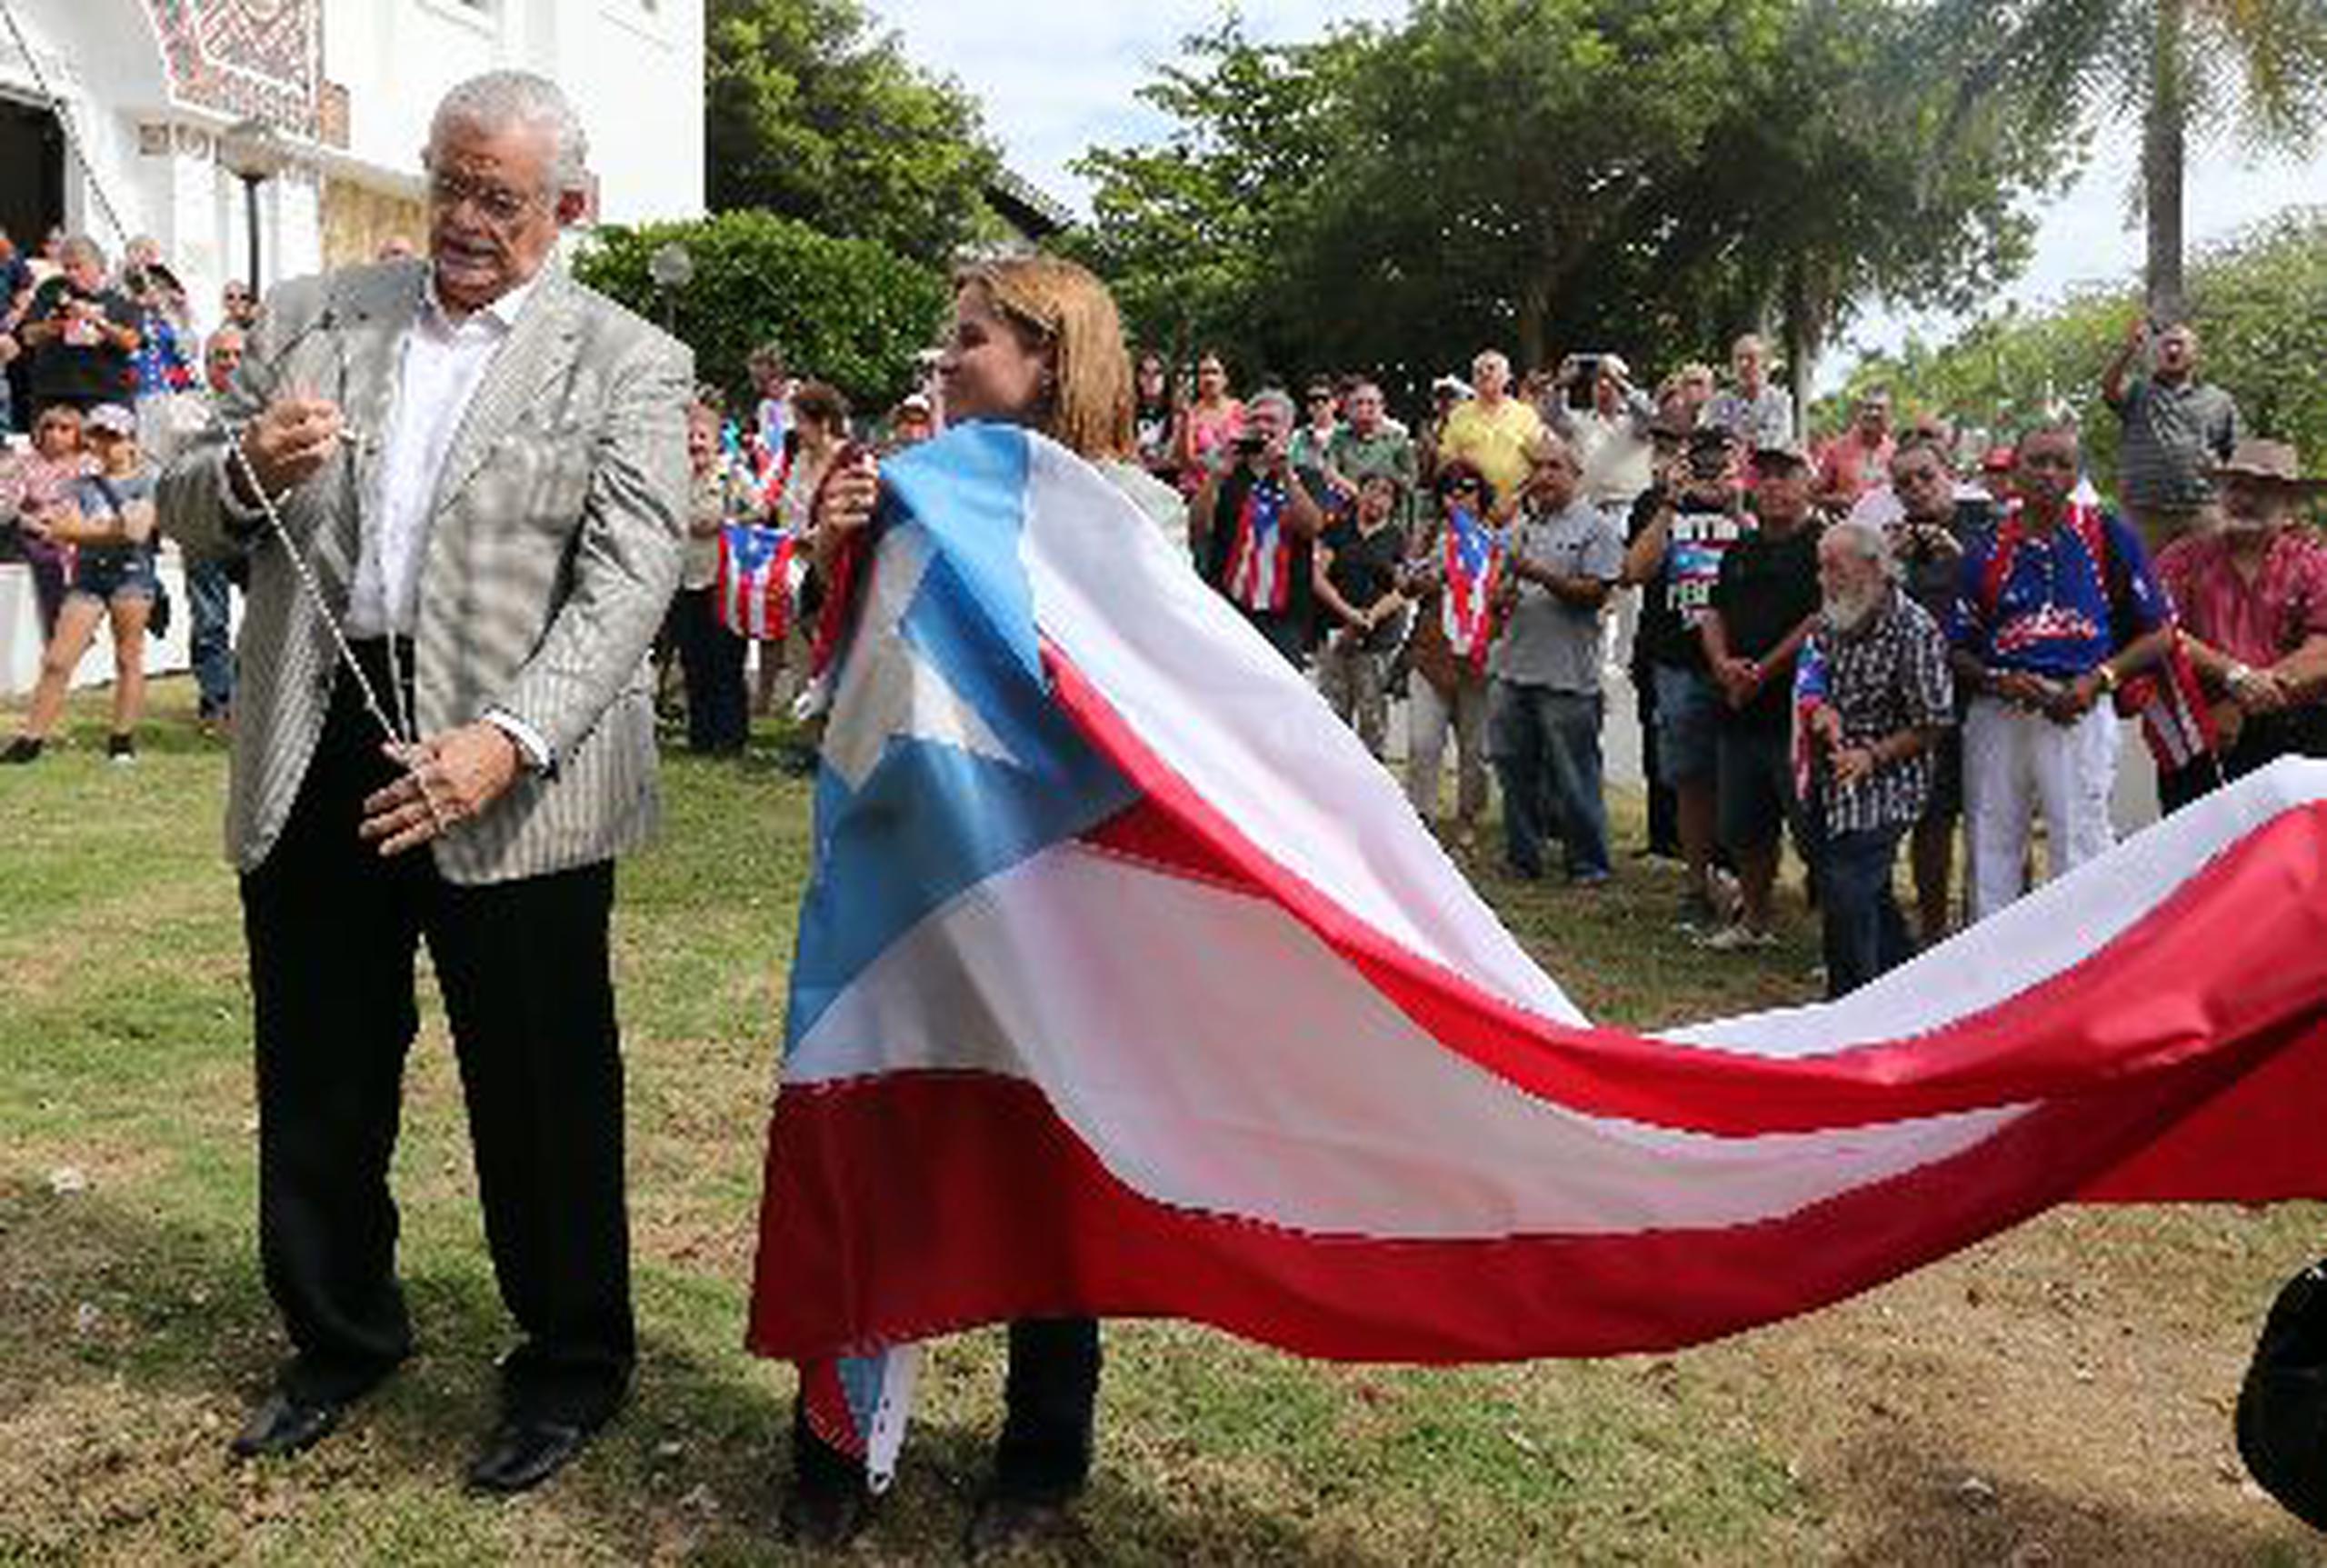  La alcaldesa entrante de San Juan, Carmen Yulín Cruz, se comprometió a cambiar las banderas puertorriqueñas en todas las instalaciones públicas de la capital con la del color azul celeste.&nbsp;<font color="yellow">(wandaliz.vega@gfrmedia.com)</font>